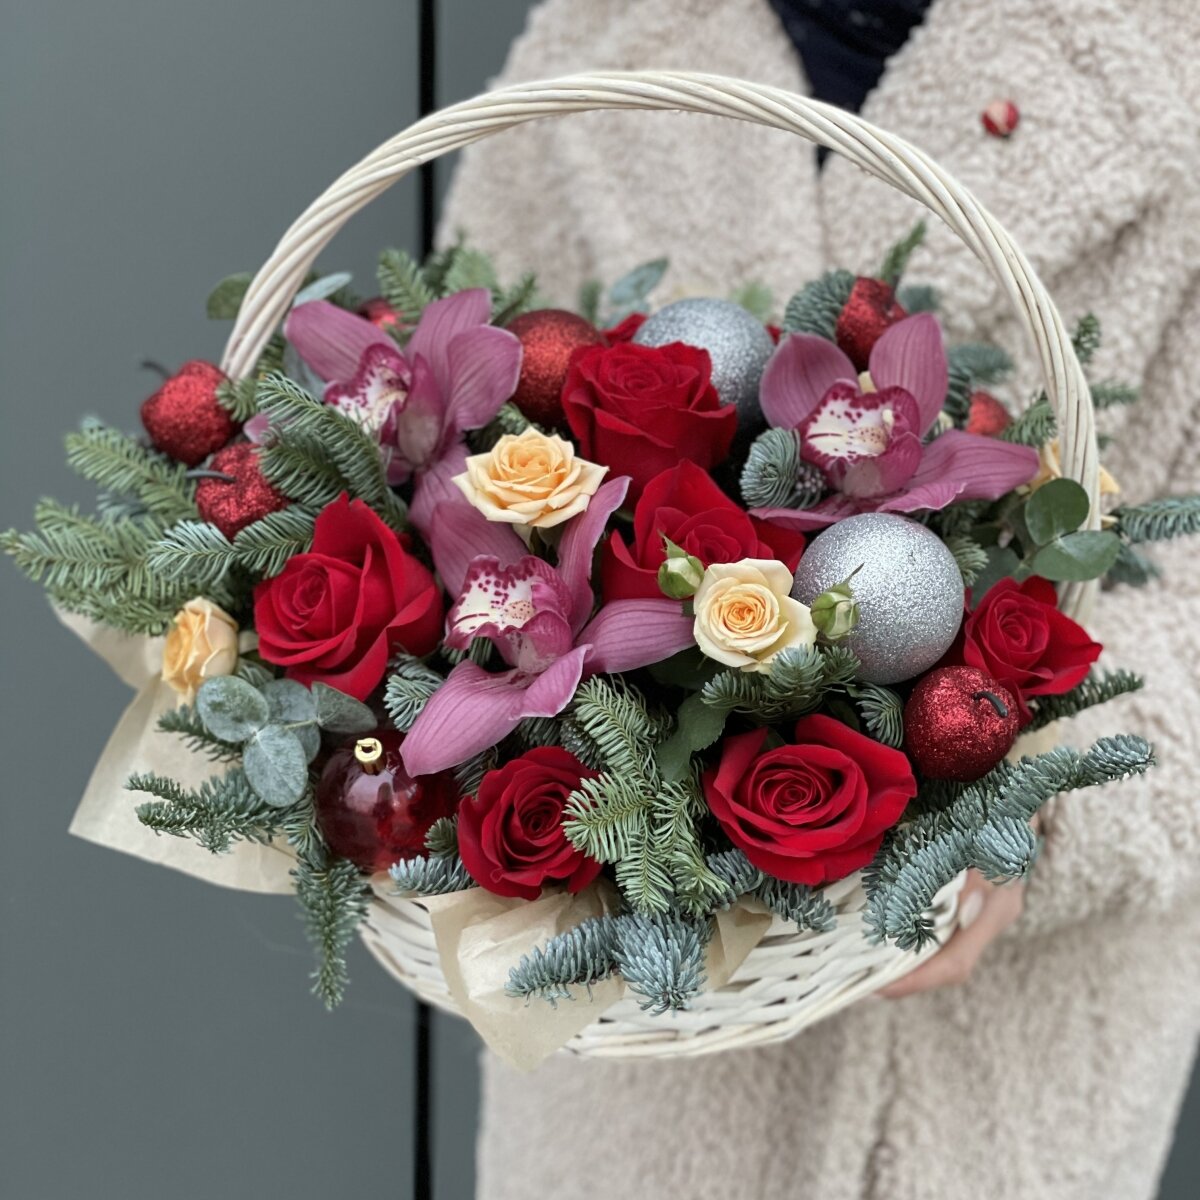 Зимняя композиция №6 с розами, цветками орхидеи и новогодним декором